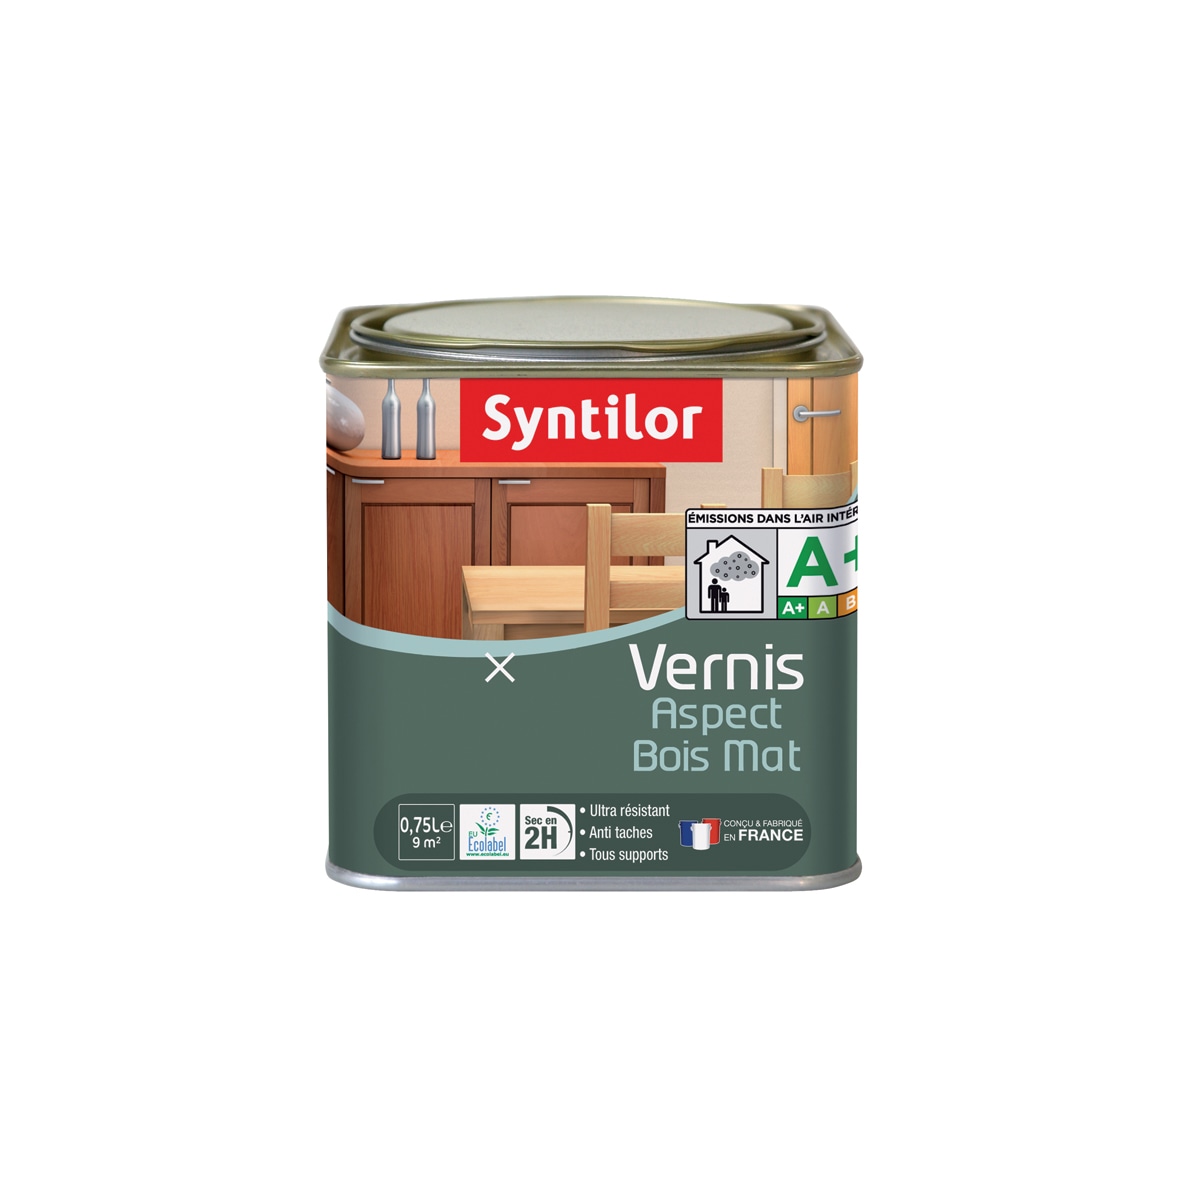 Syntilor - Lak voor meubels en voorwerpen